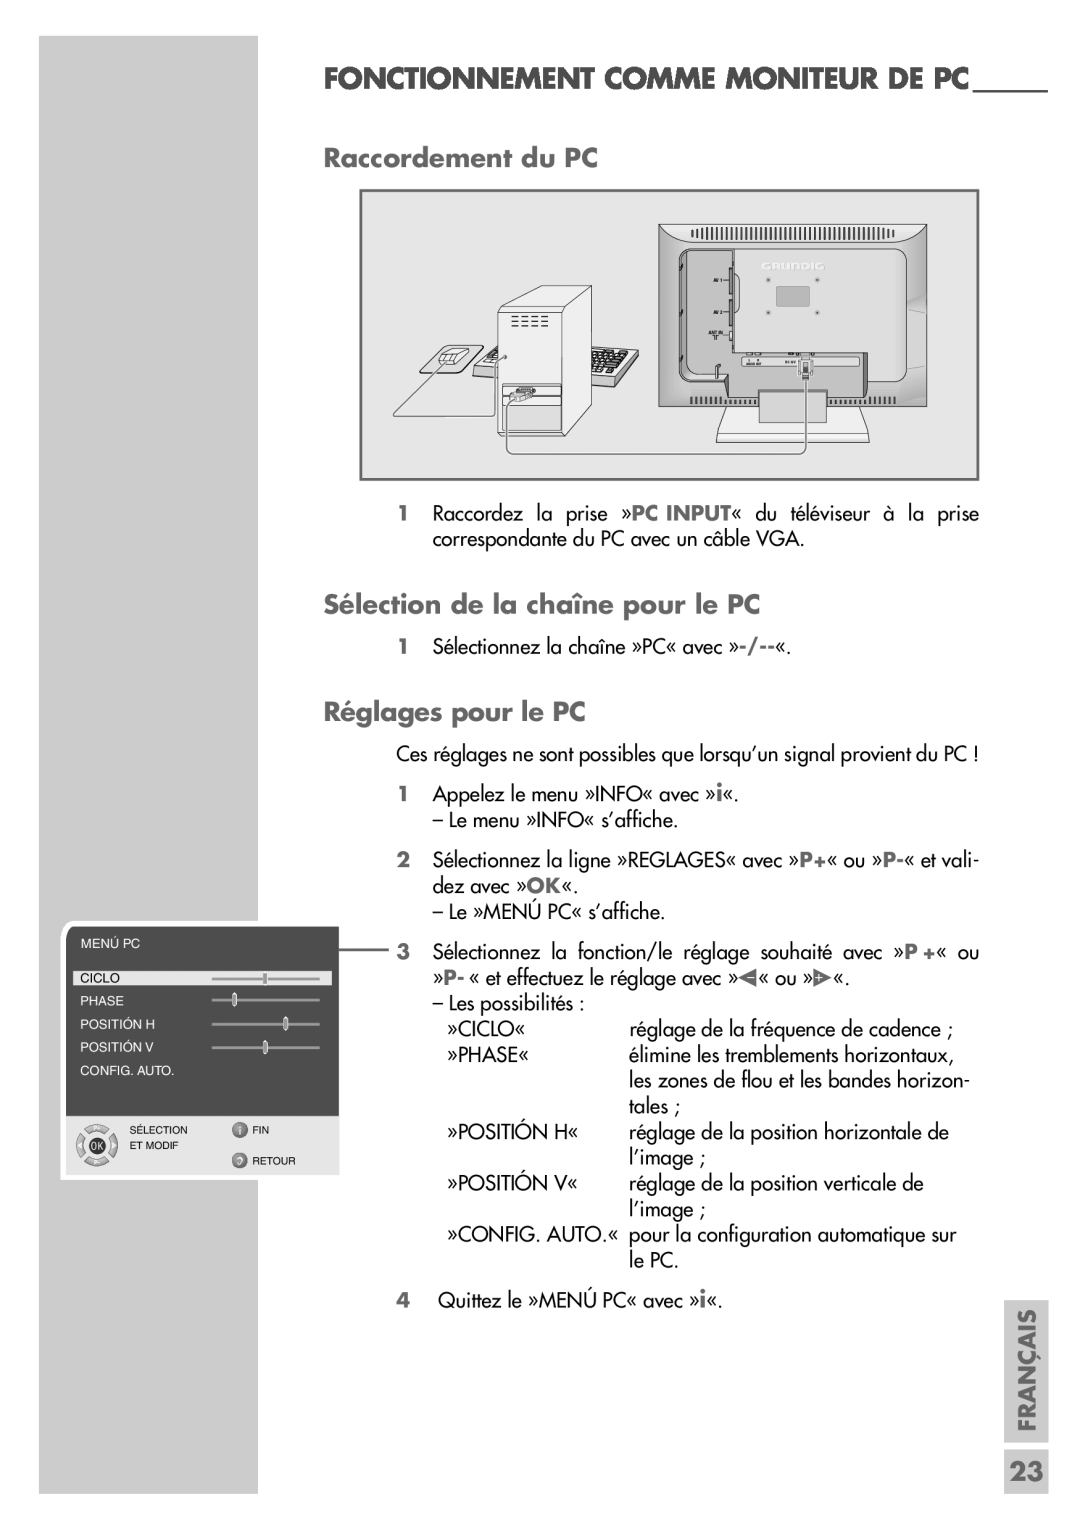 Grundig LW49-7710BS Fonctionnement Comme Moniteur De Pc, Raccordement du PC, Sélection de la chaîne pour le PC, Français 